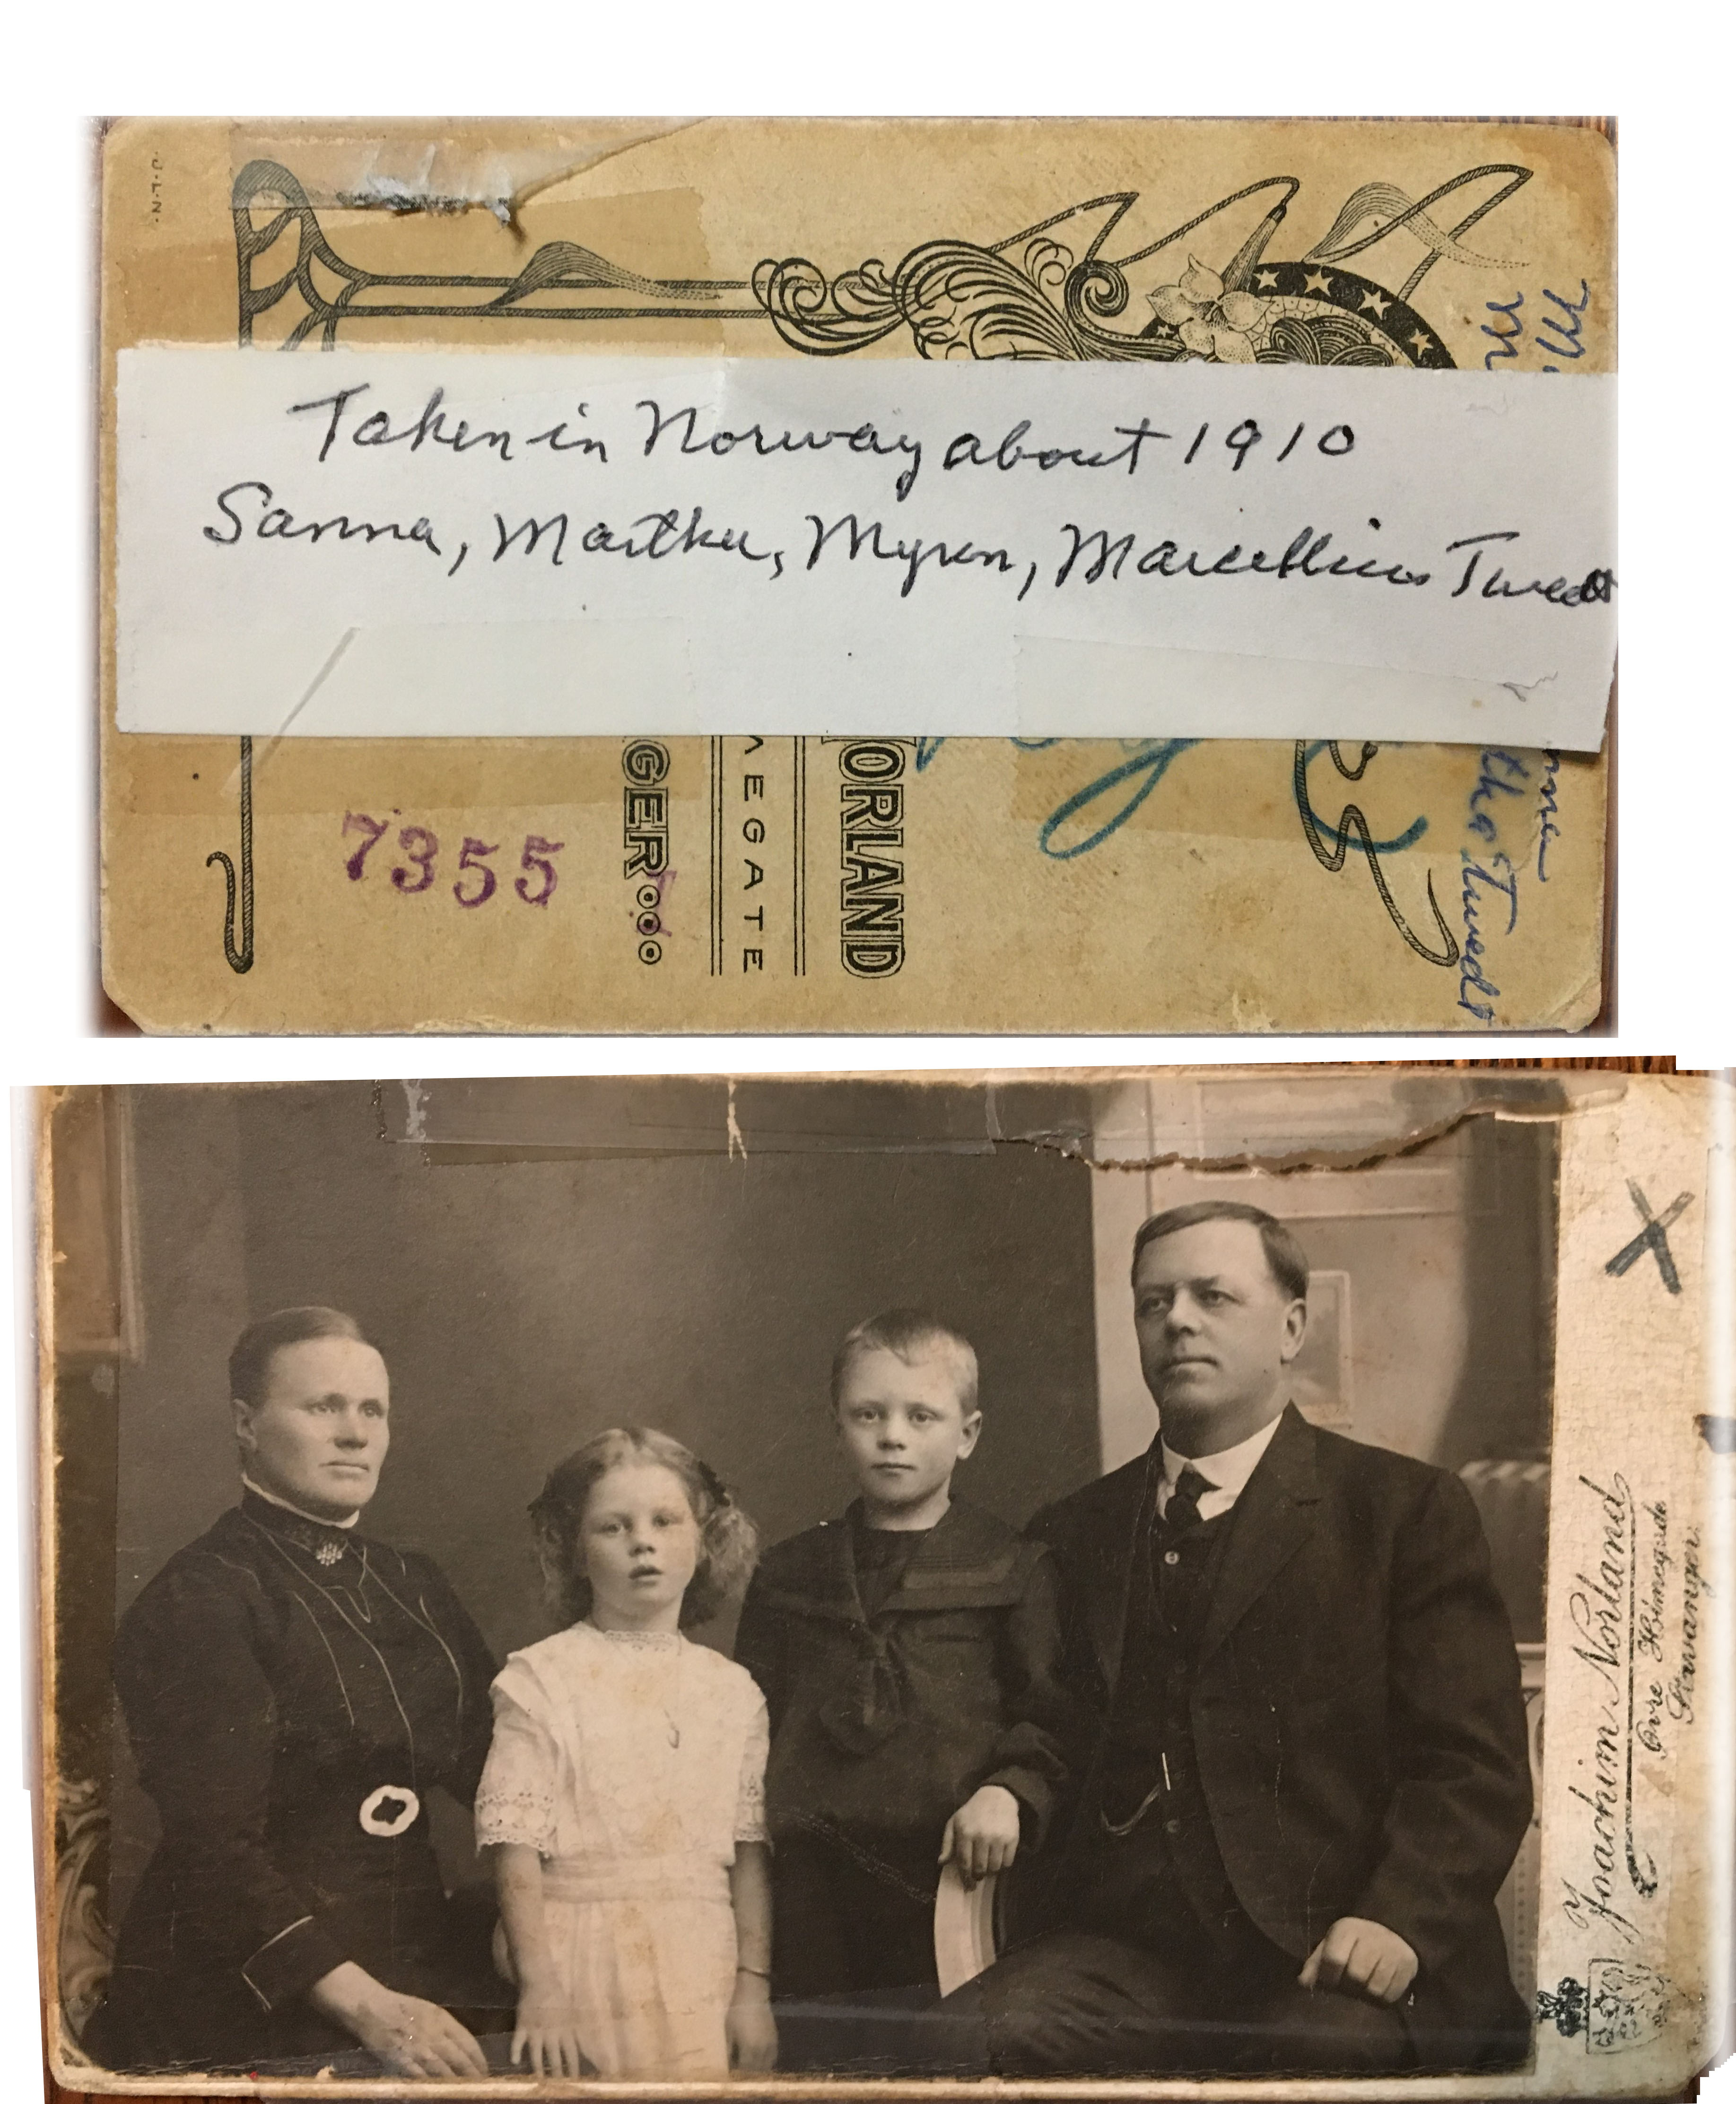 Twedt Family Norway 1910